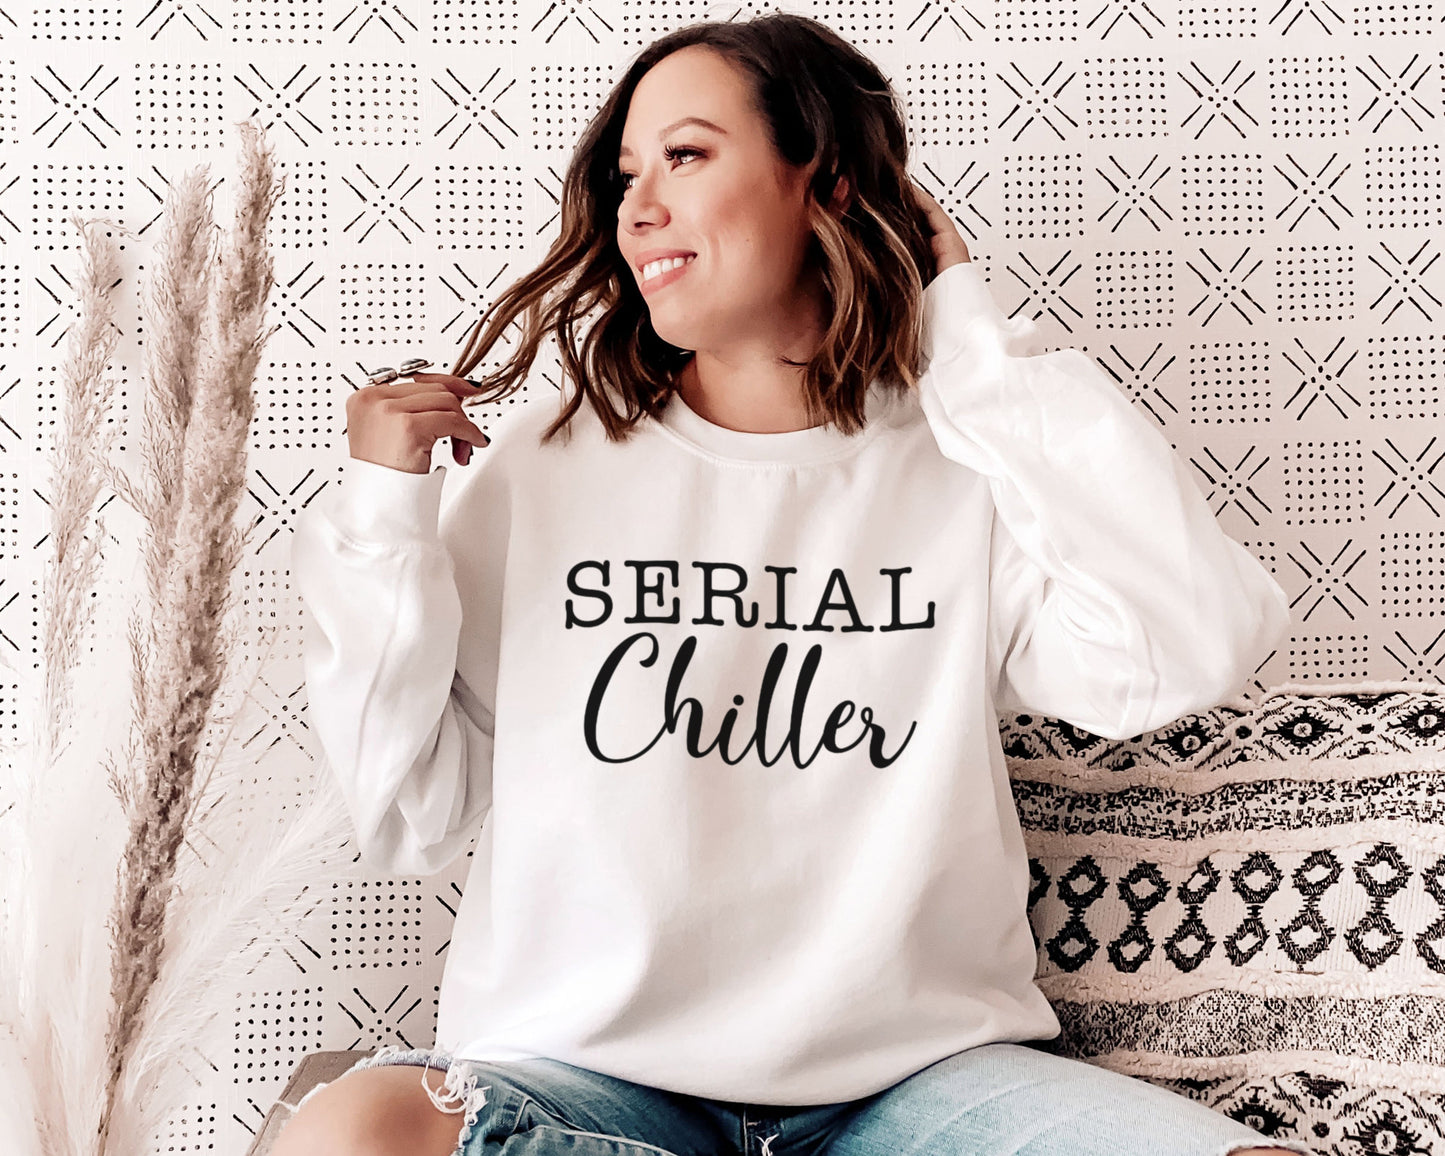 Serial Chiller Sweatshirt